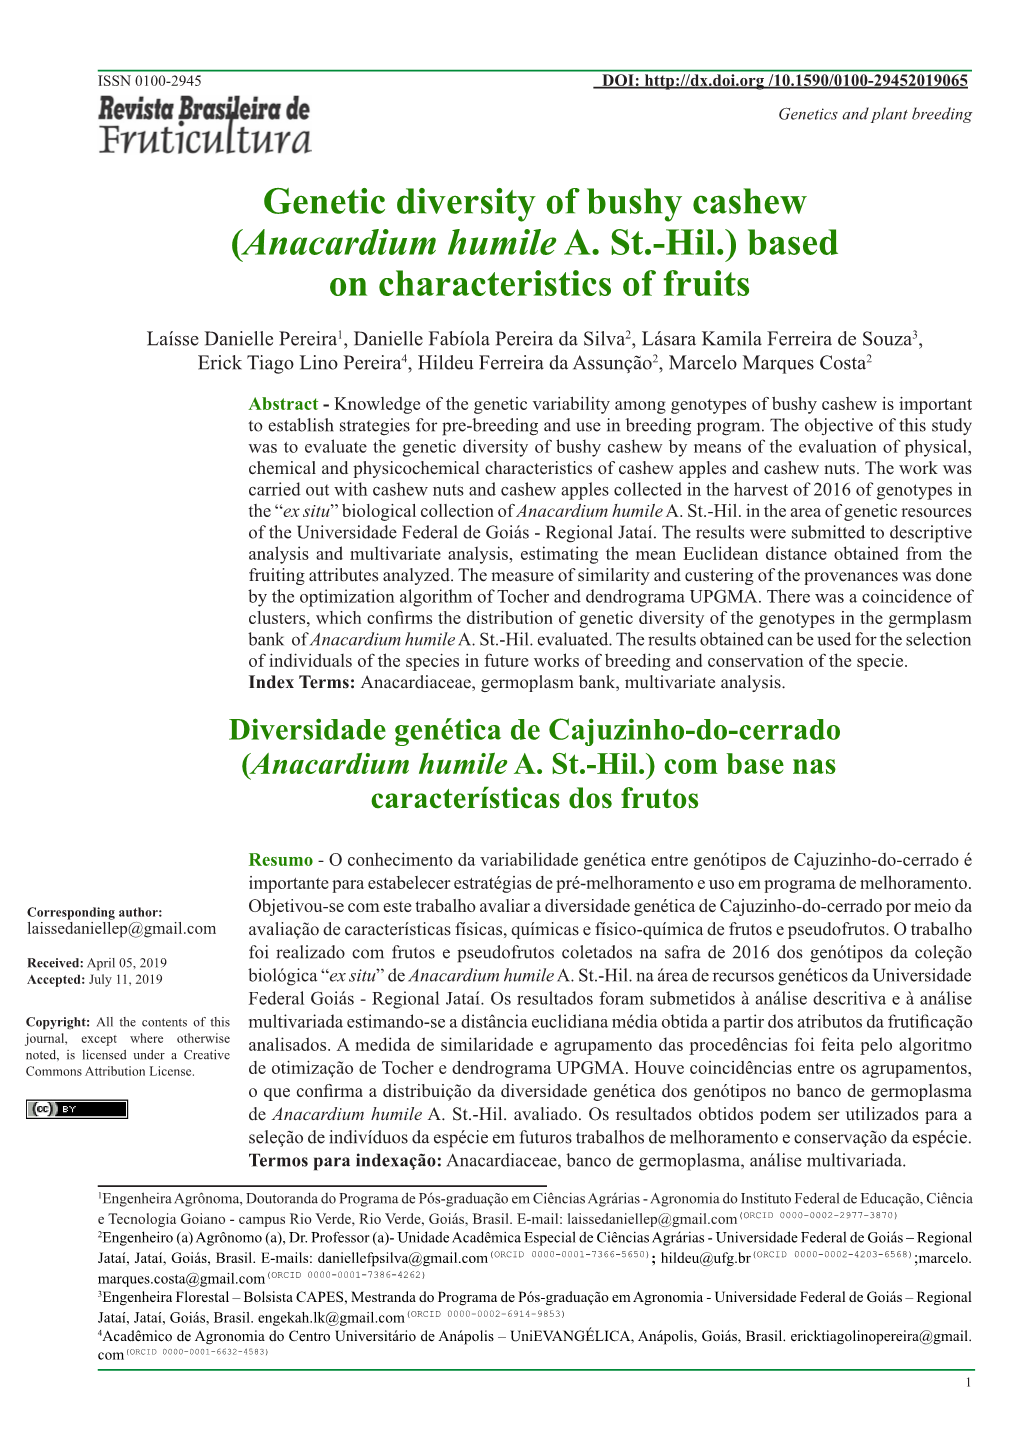 Genetic Diversity of Bushy Cashew (Anacardium Humile A. St.-Hil.) Based on Characteristics of Fruits